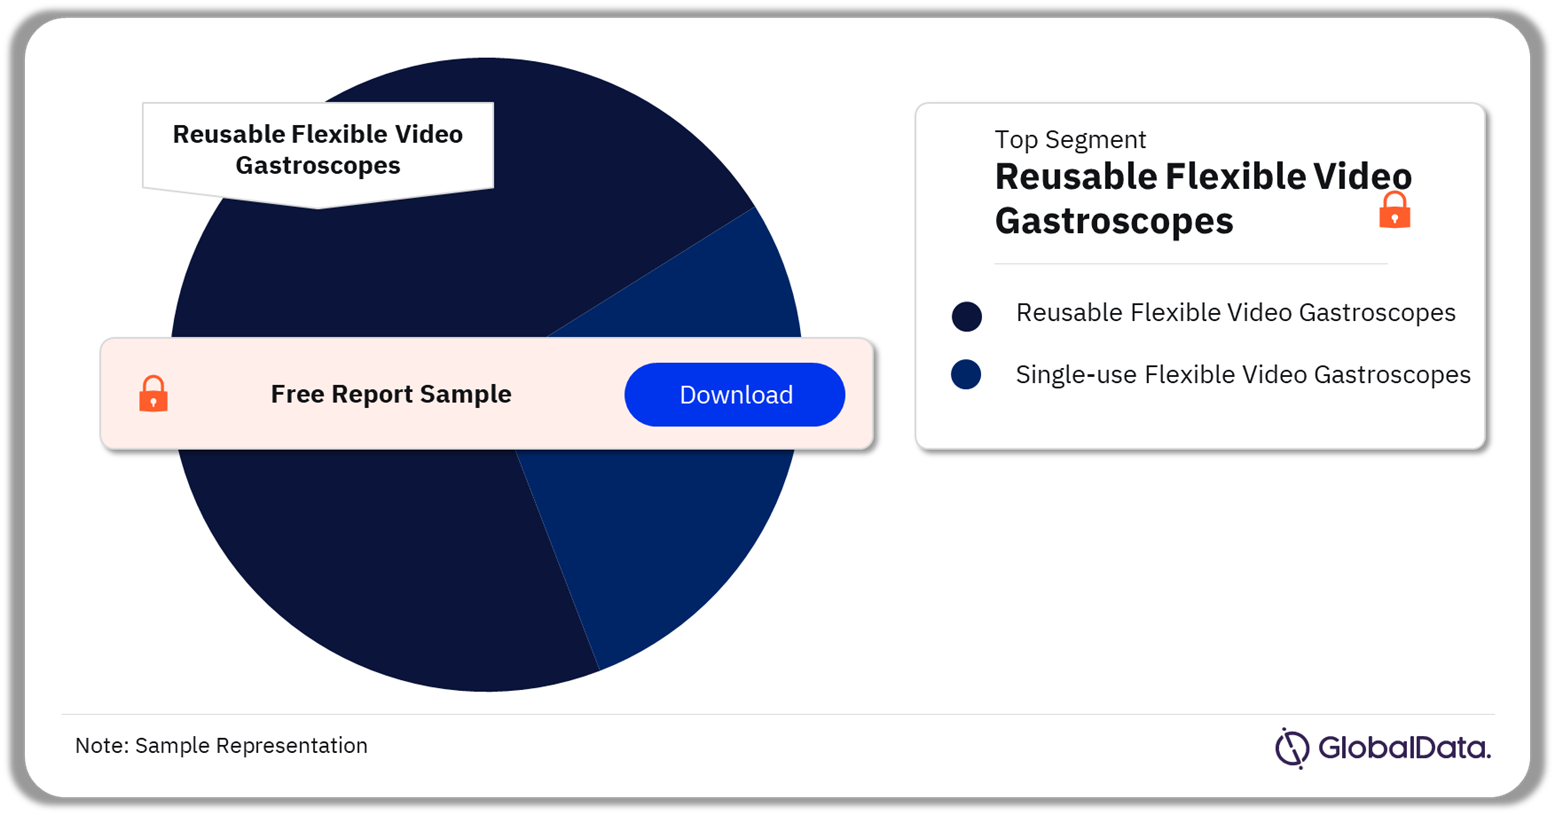 Gastroscopes Market Analysis by Flexible Video Gastroscopes Segments, 2023 (%)